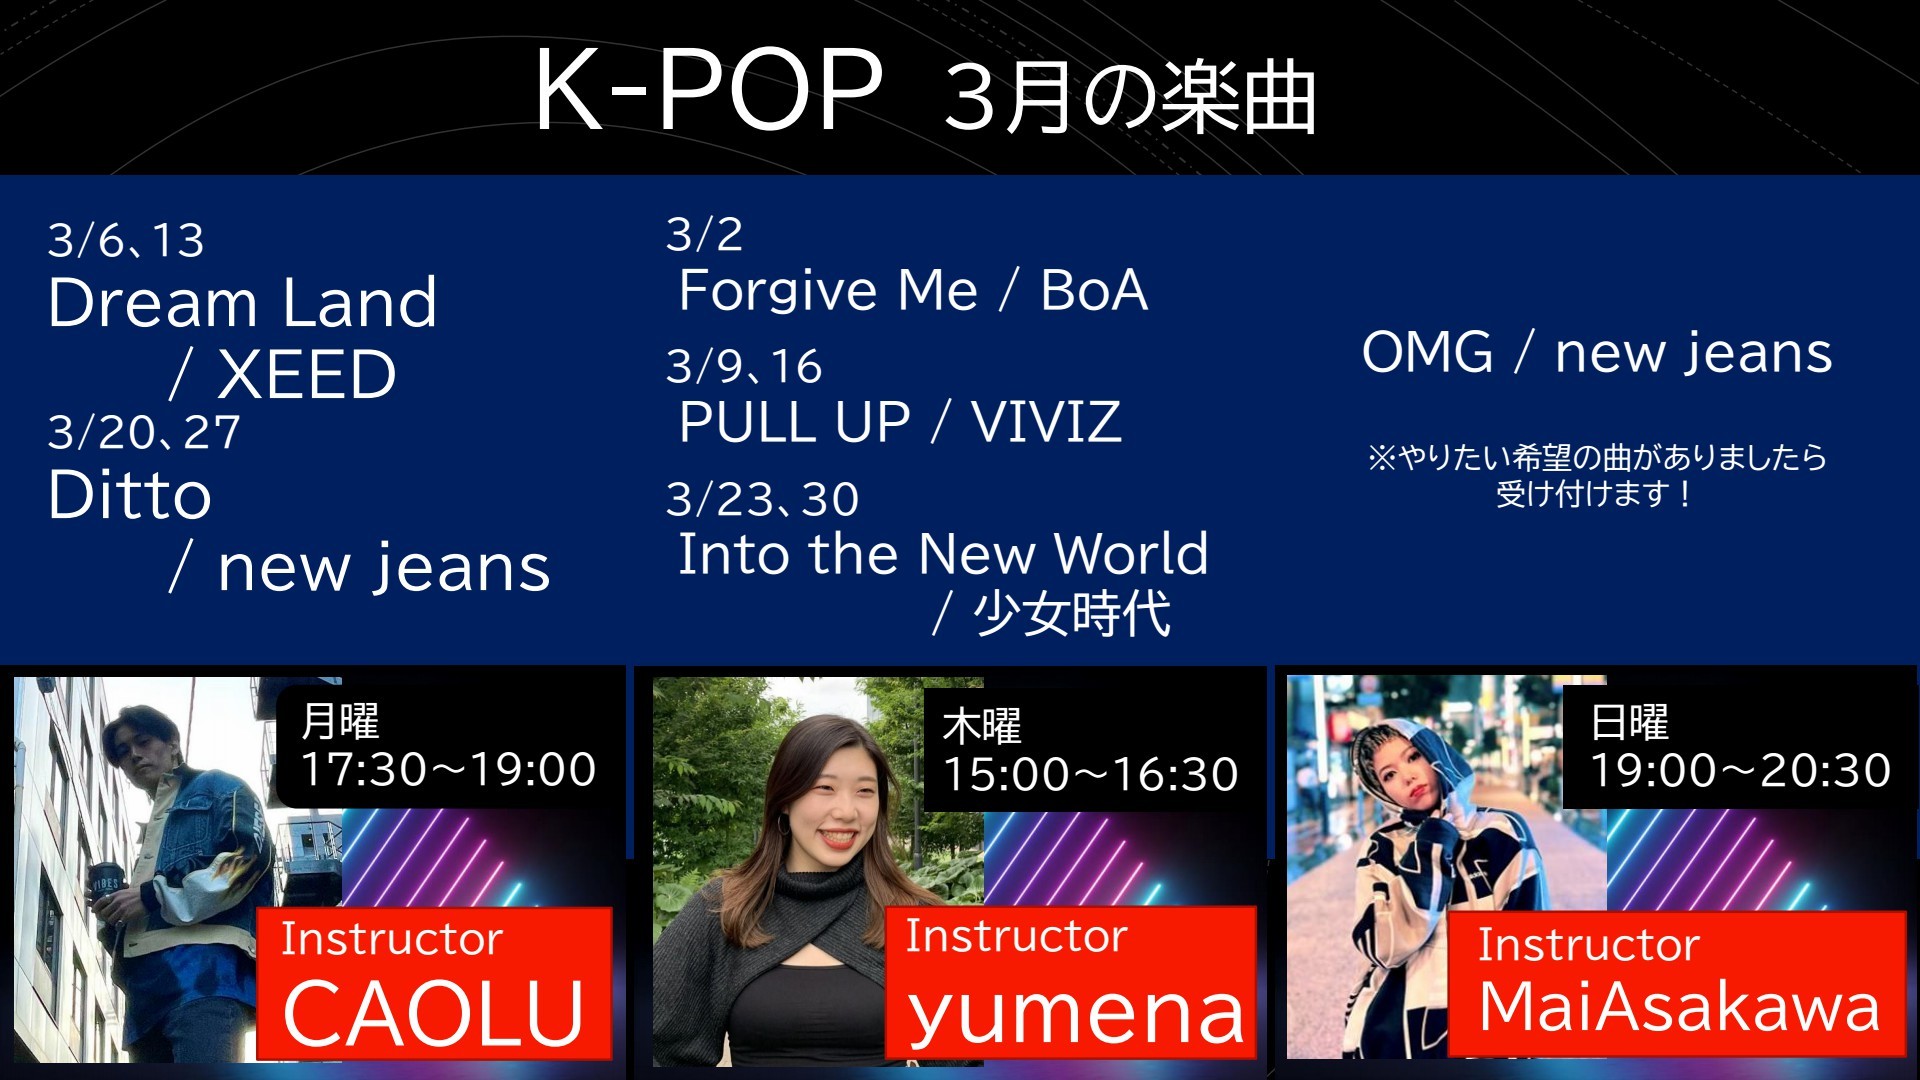 3月 K POP2